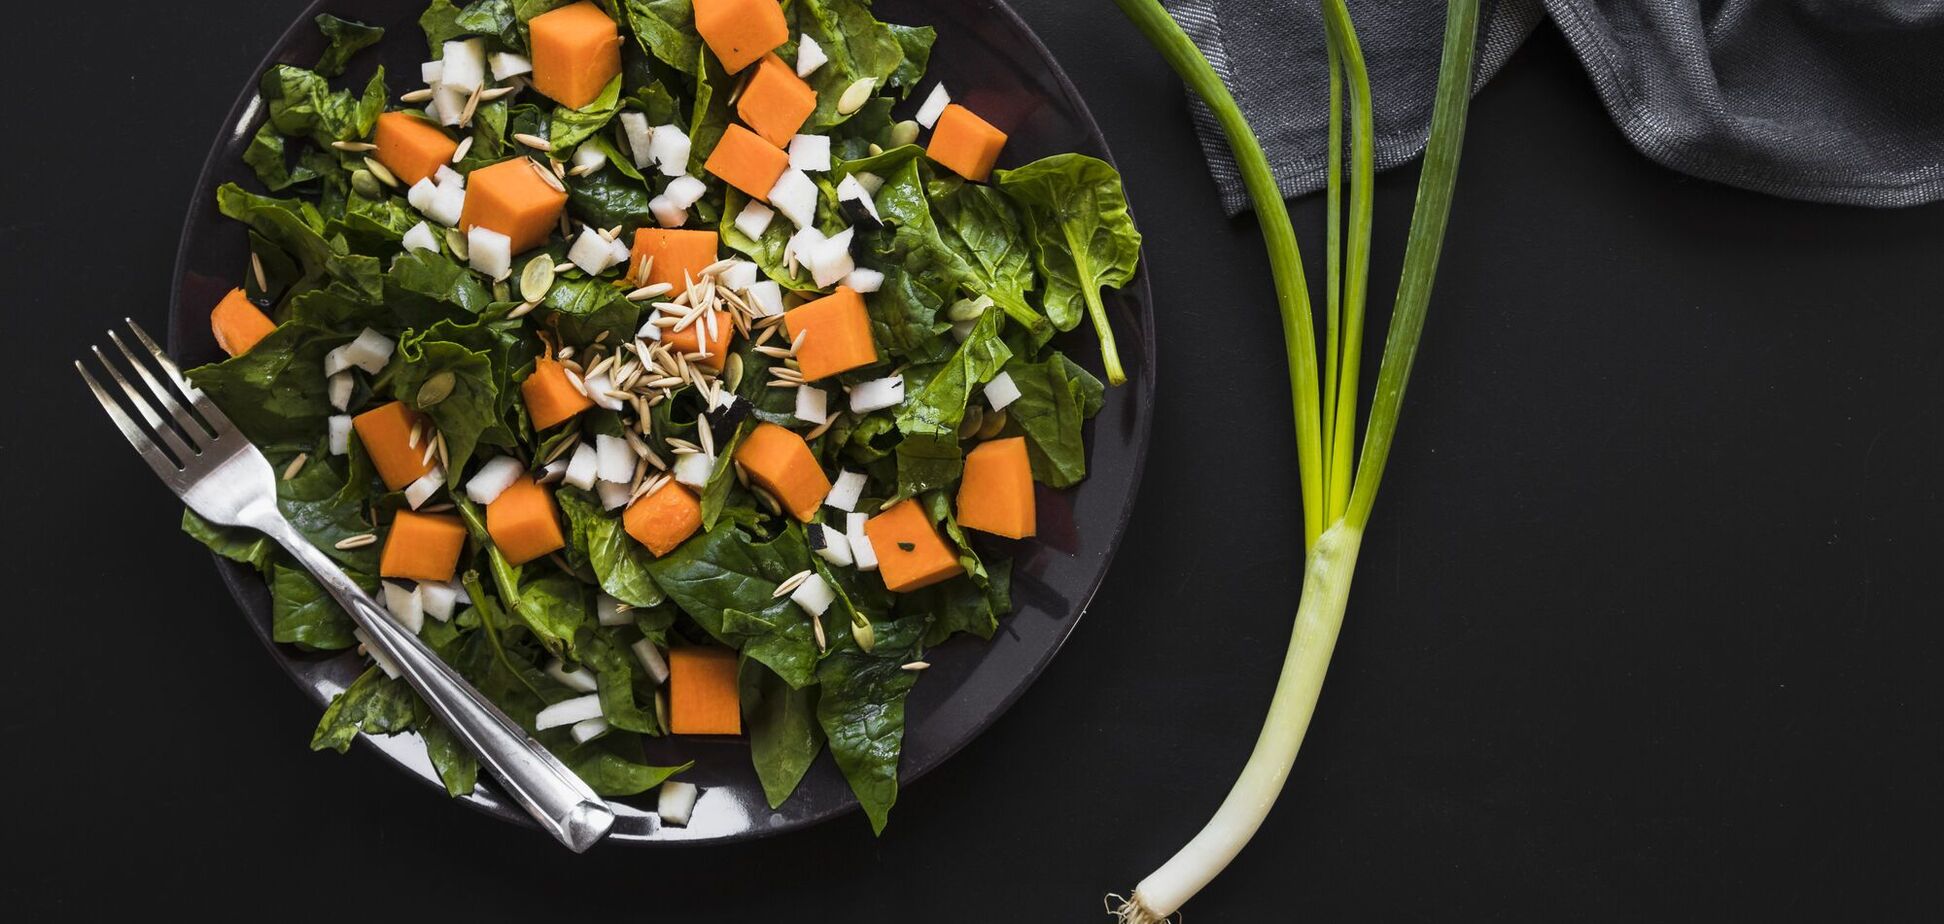 Теплий салат з гарбузом та печінкою: незвичне поєднання інгредієнтів, здатне викликати гастрономічний захват